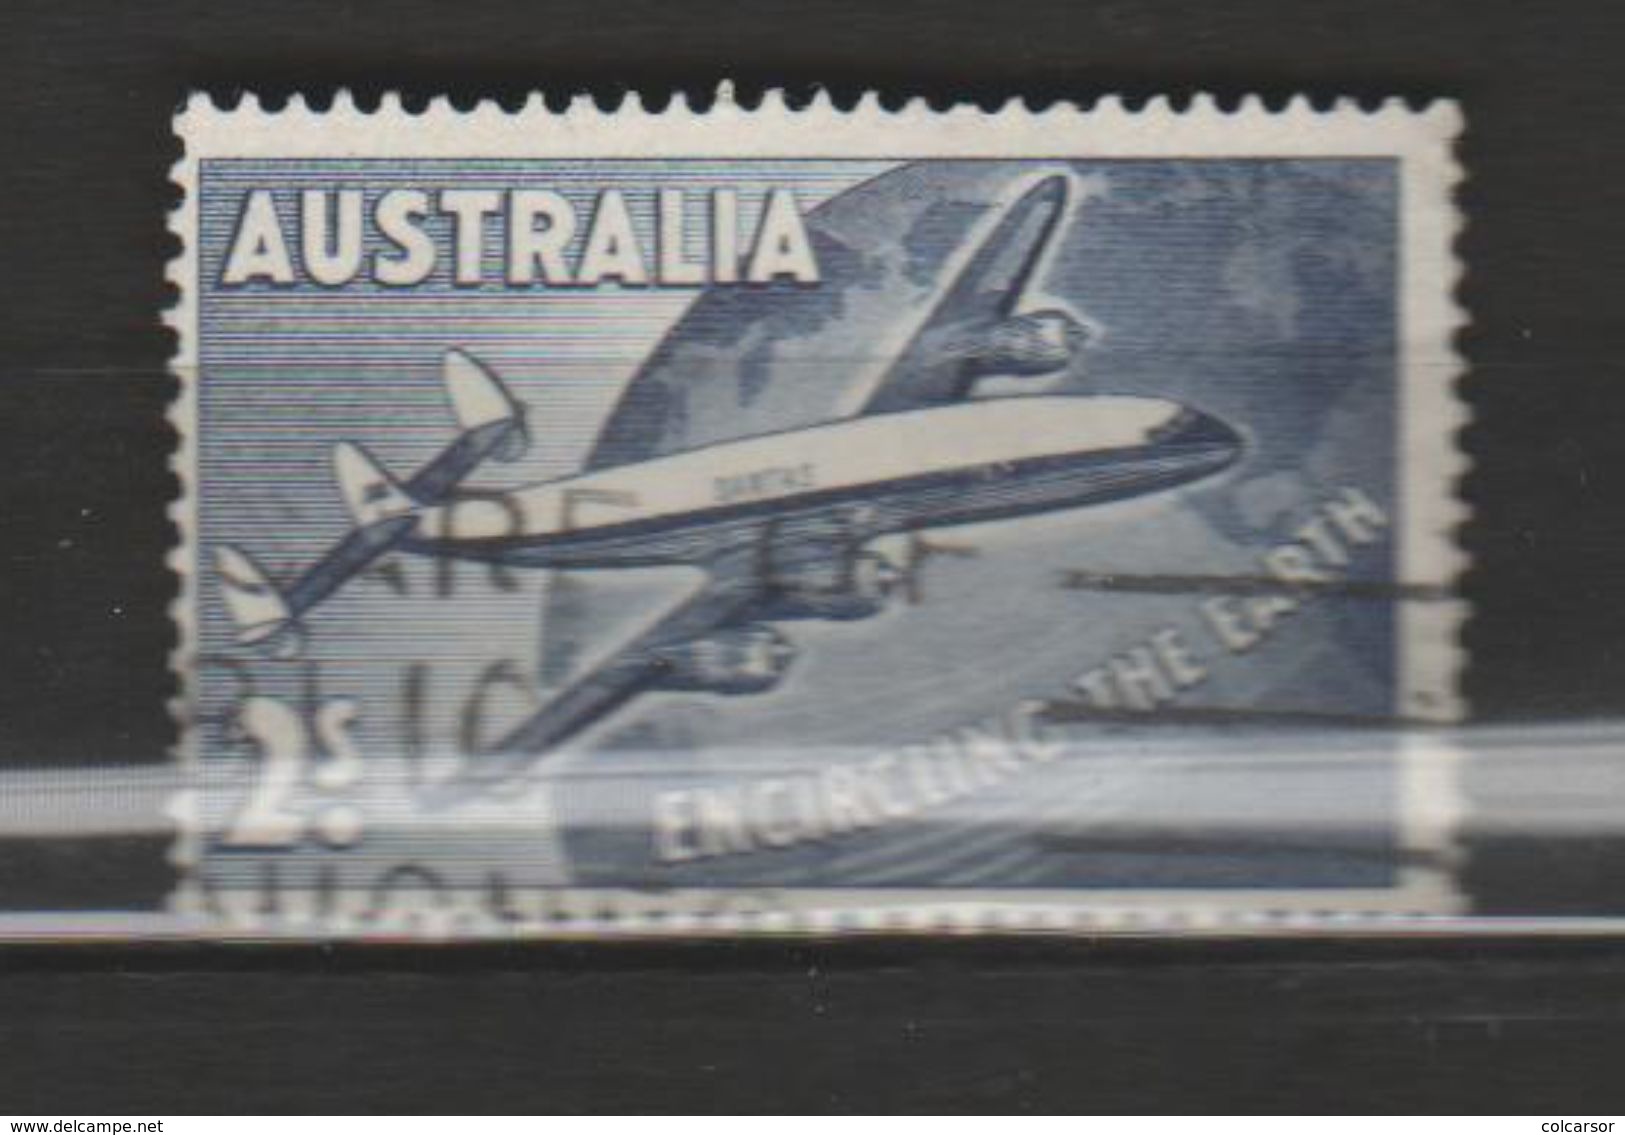 AUSTRALIE  P AÉRIENNE ,N°10  VOL COMMERCIAL AUTOUR DU MONDE" - Used Stamps